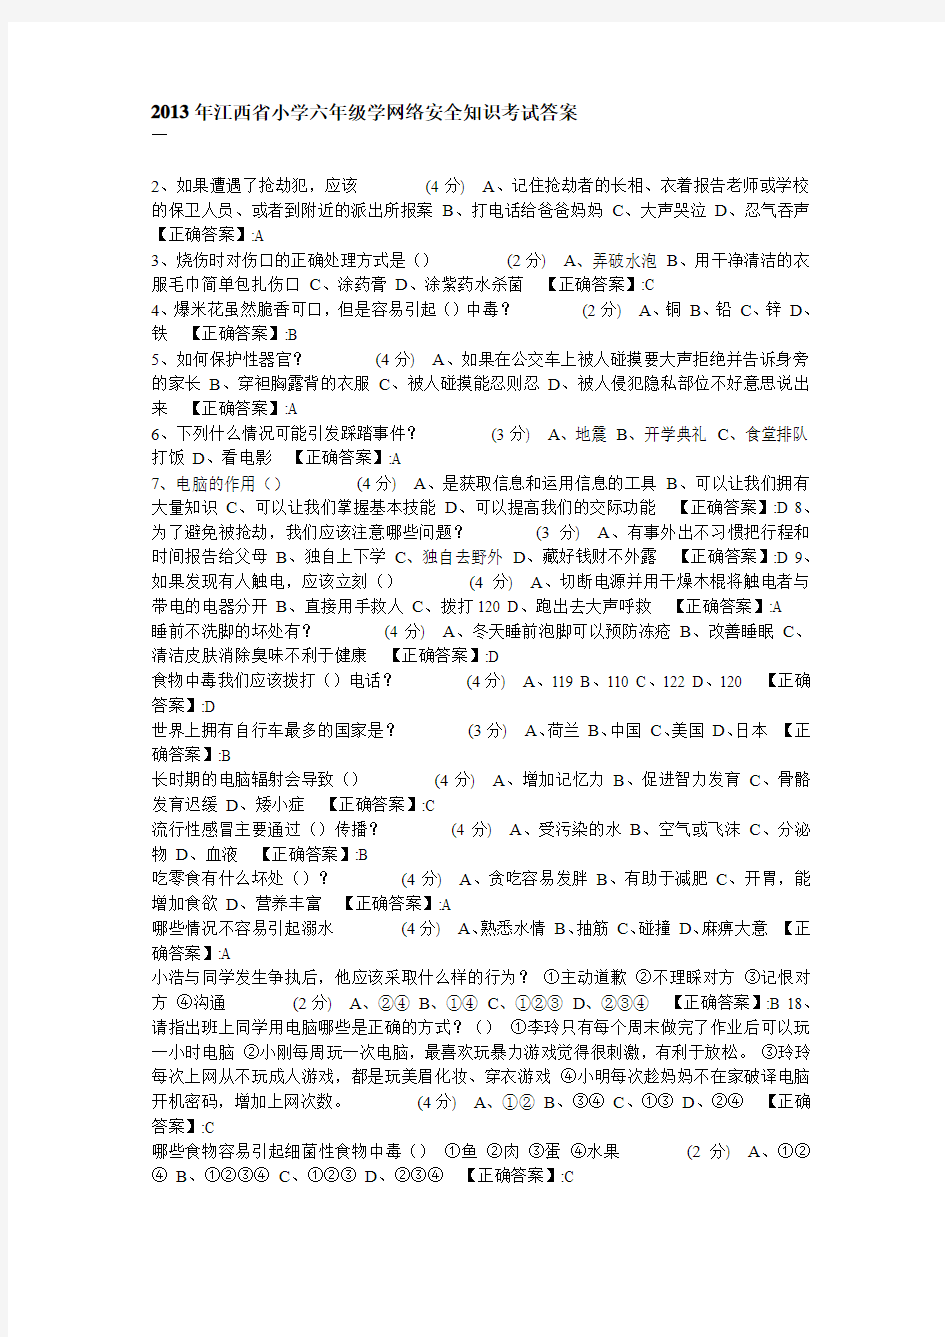 2013年江西省小学六年级学网络安全知识考试答案